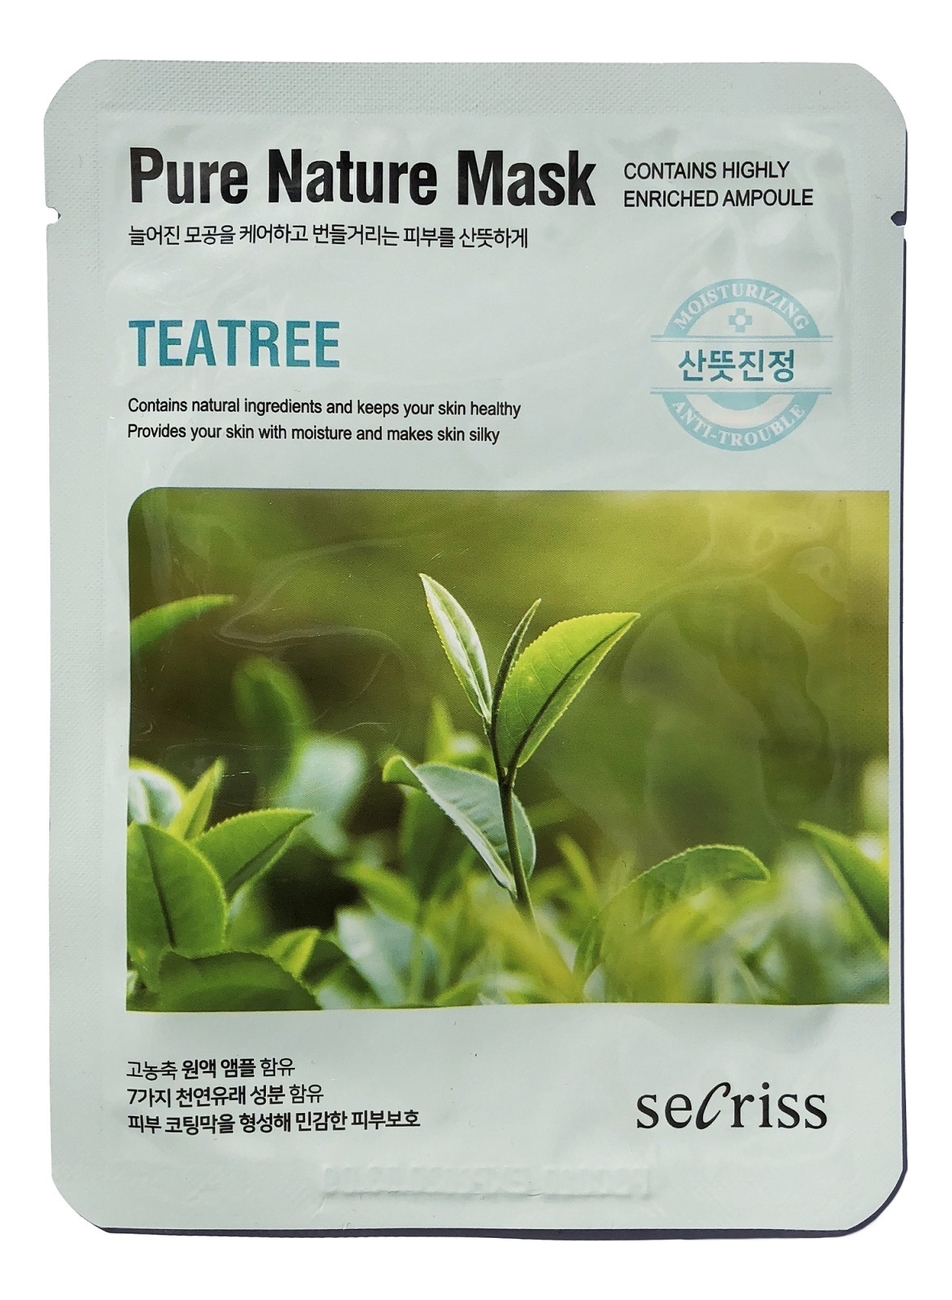 Тканевая маска для лица Secriss Pure Nature Mask Pack Teatree 25мл тканевая маска для лица secriss pure nature mask pack teatree 25мл